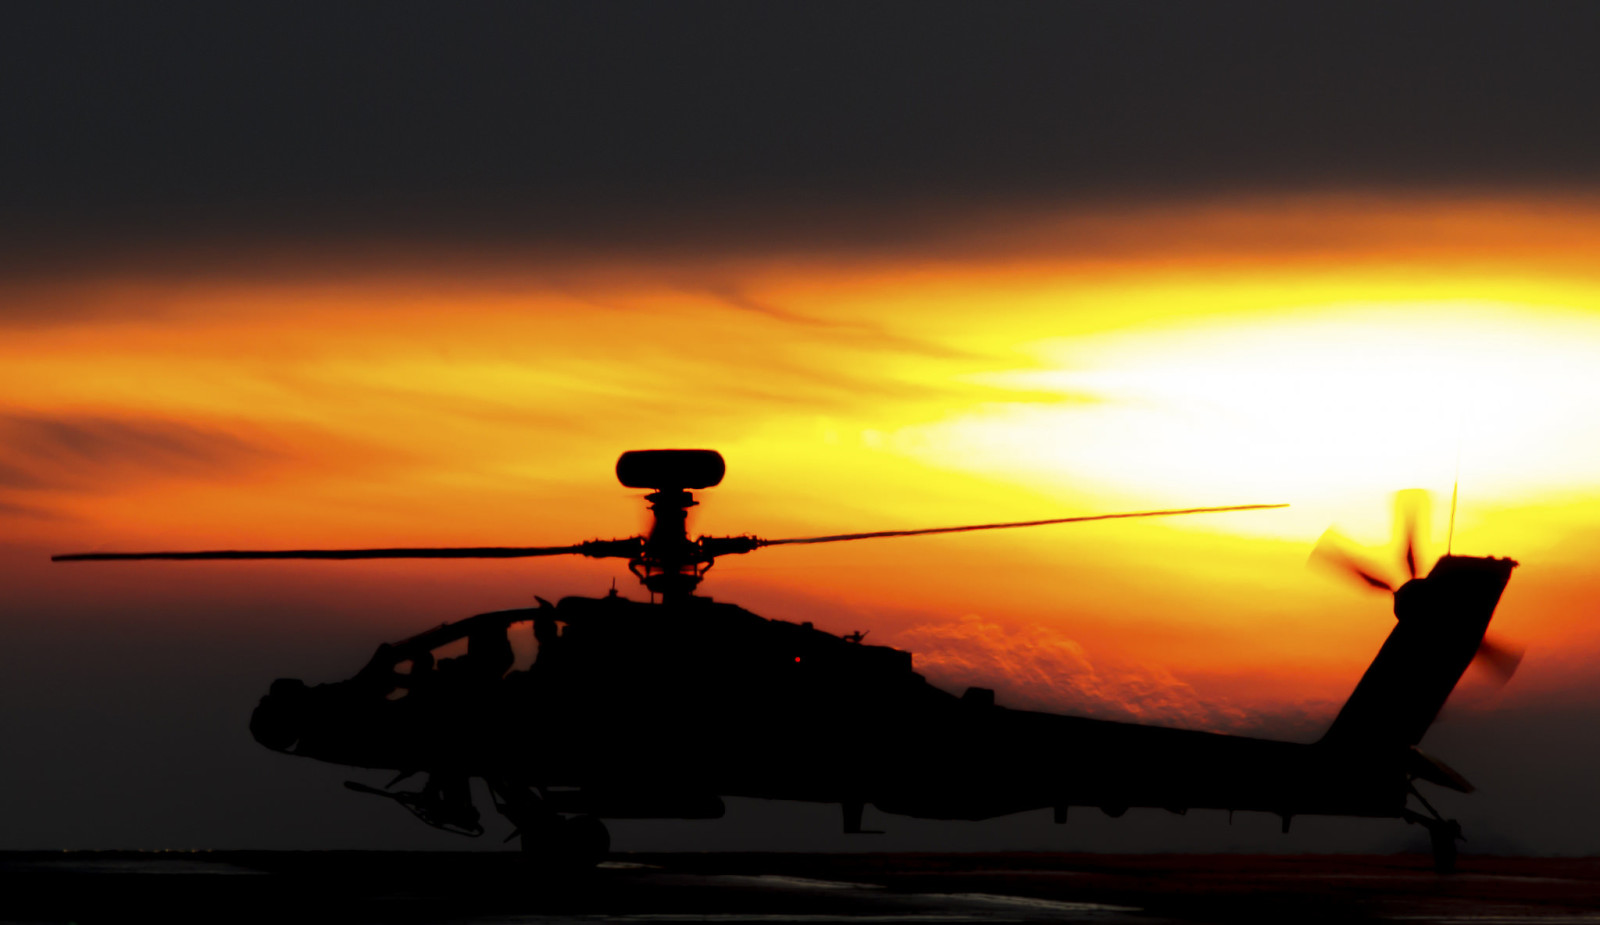 直升机, 休克, 阿帕奇, AH-64, 主要, “ Apache”